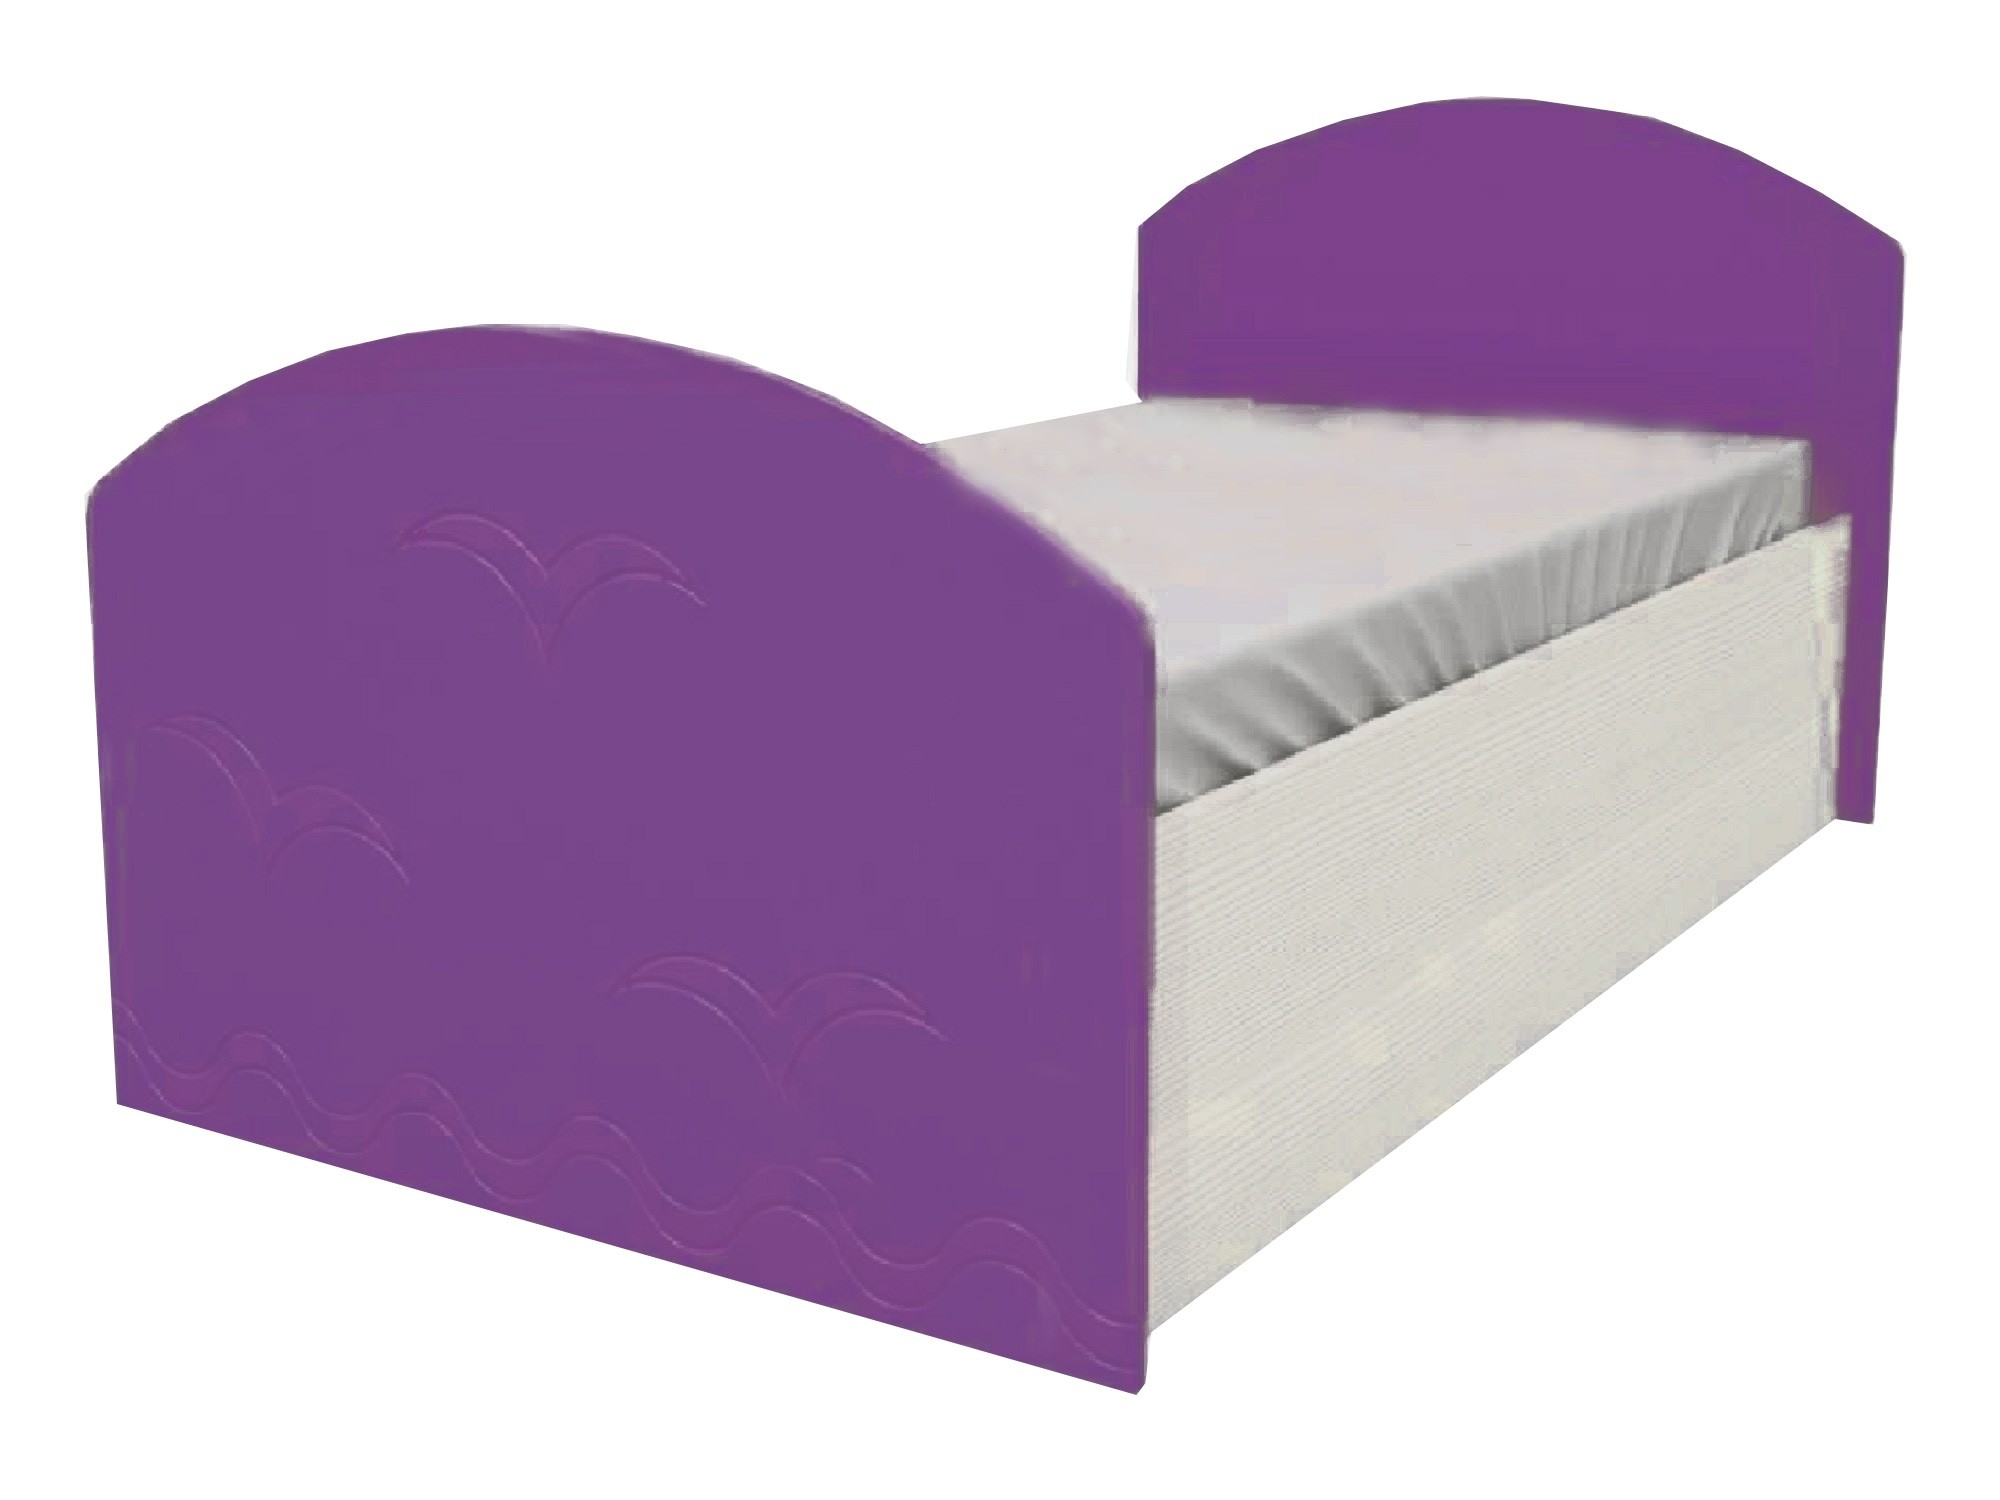 Юниор-2 Детская кровать 80, металлик (Фиолетовый металлик, Дуб белёный) Дуб белёный, МДФ, ЛДСП